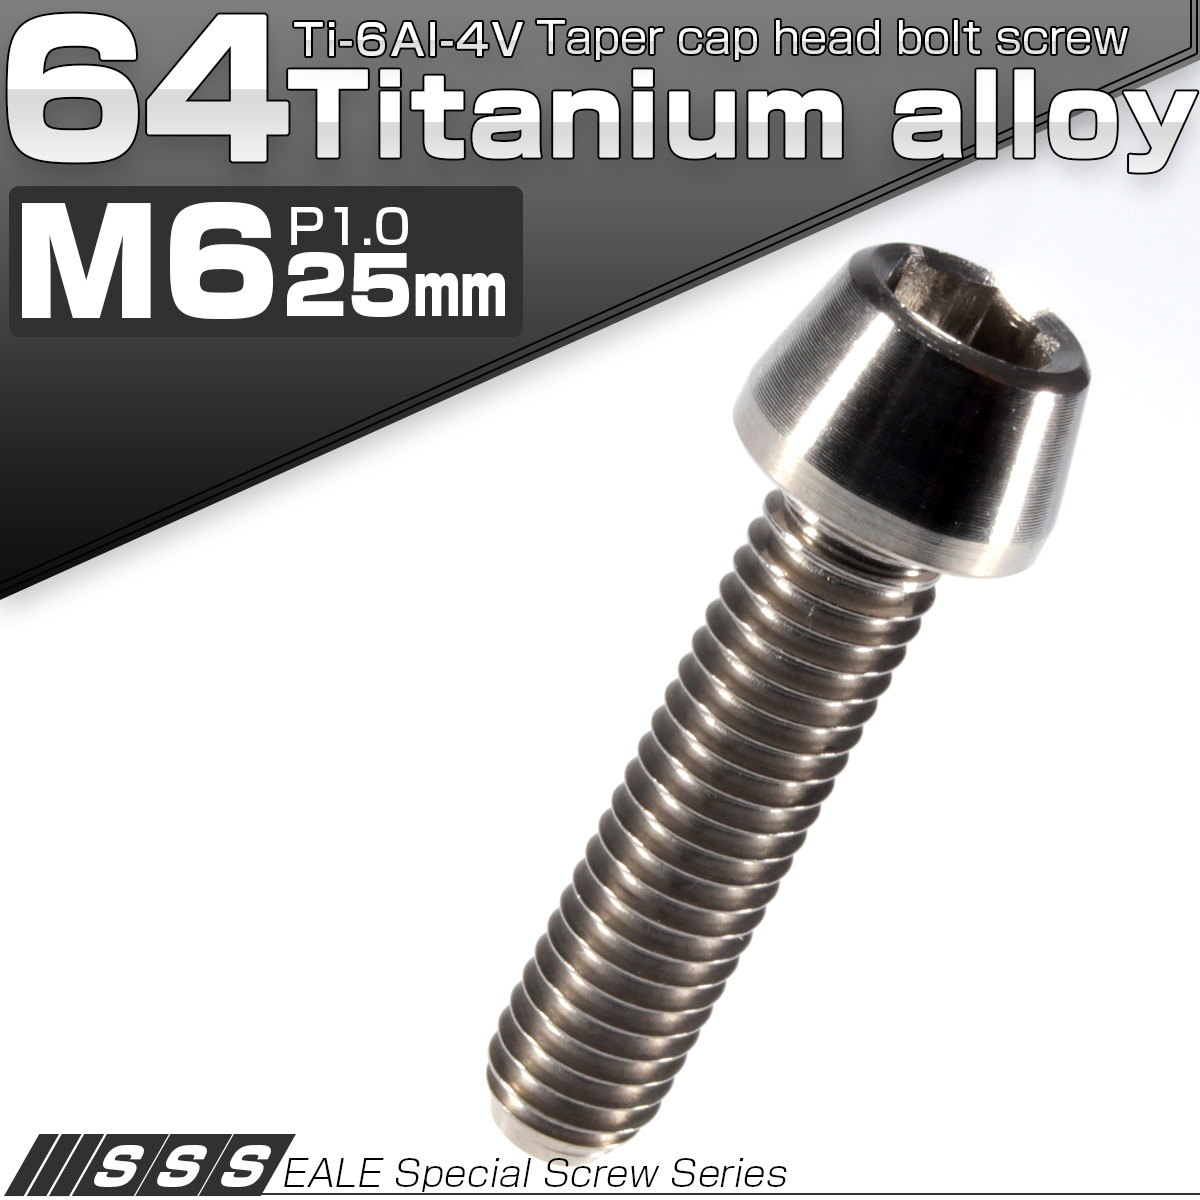 チタンボルト M6×25mm P1.0 キャップボルト 六角穴付き シルバー 素地色 テーパー JA105